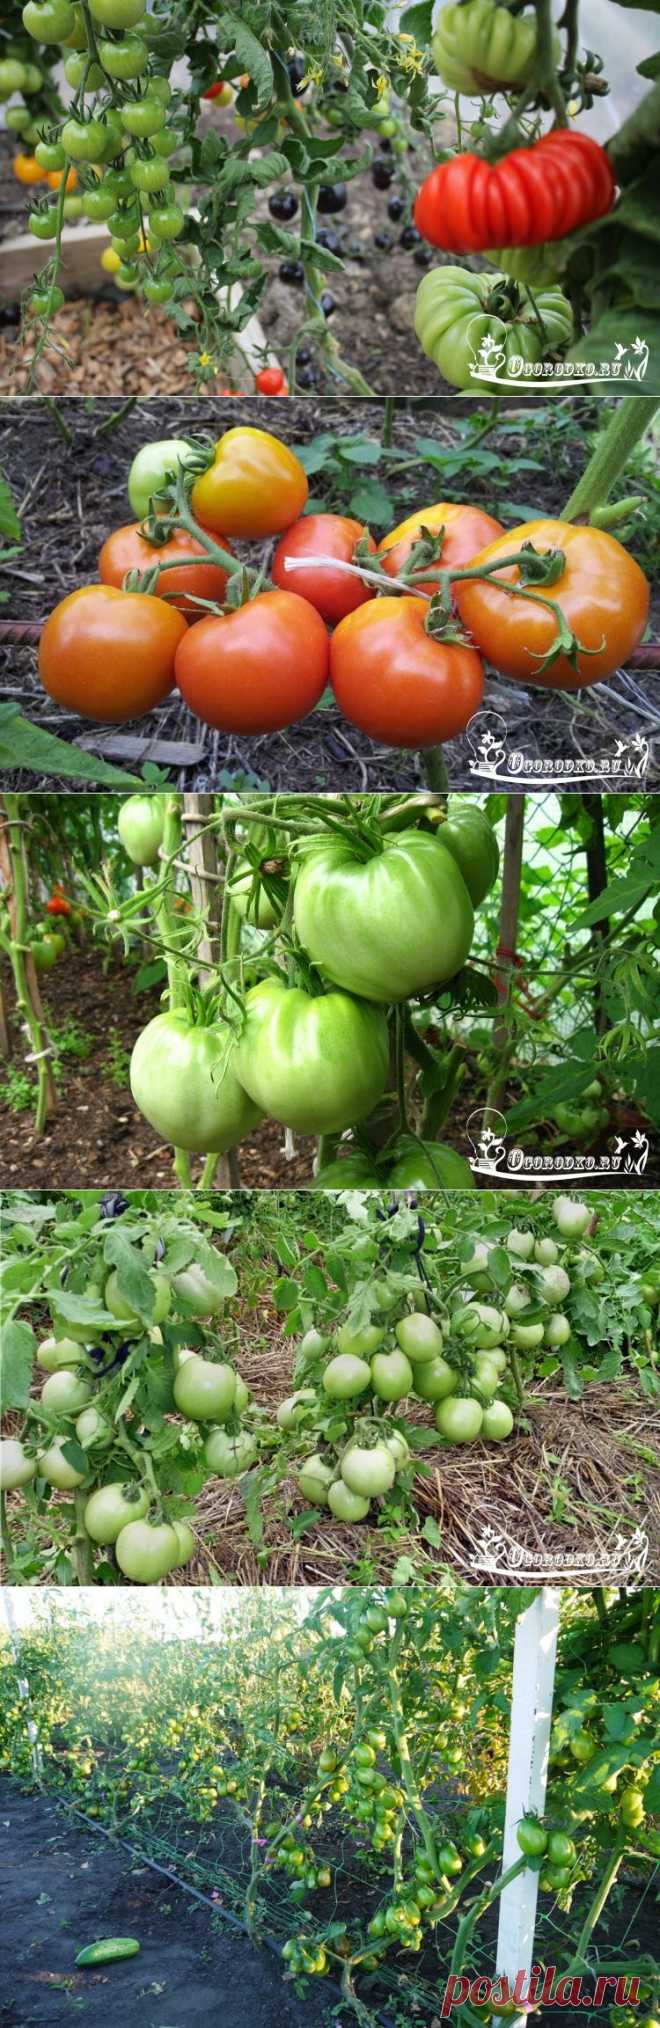 Сорта помидоров для открытого грунта - какие самые лучшие?